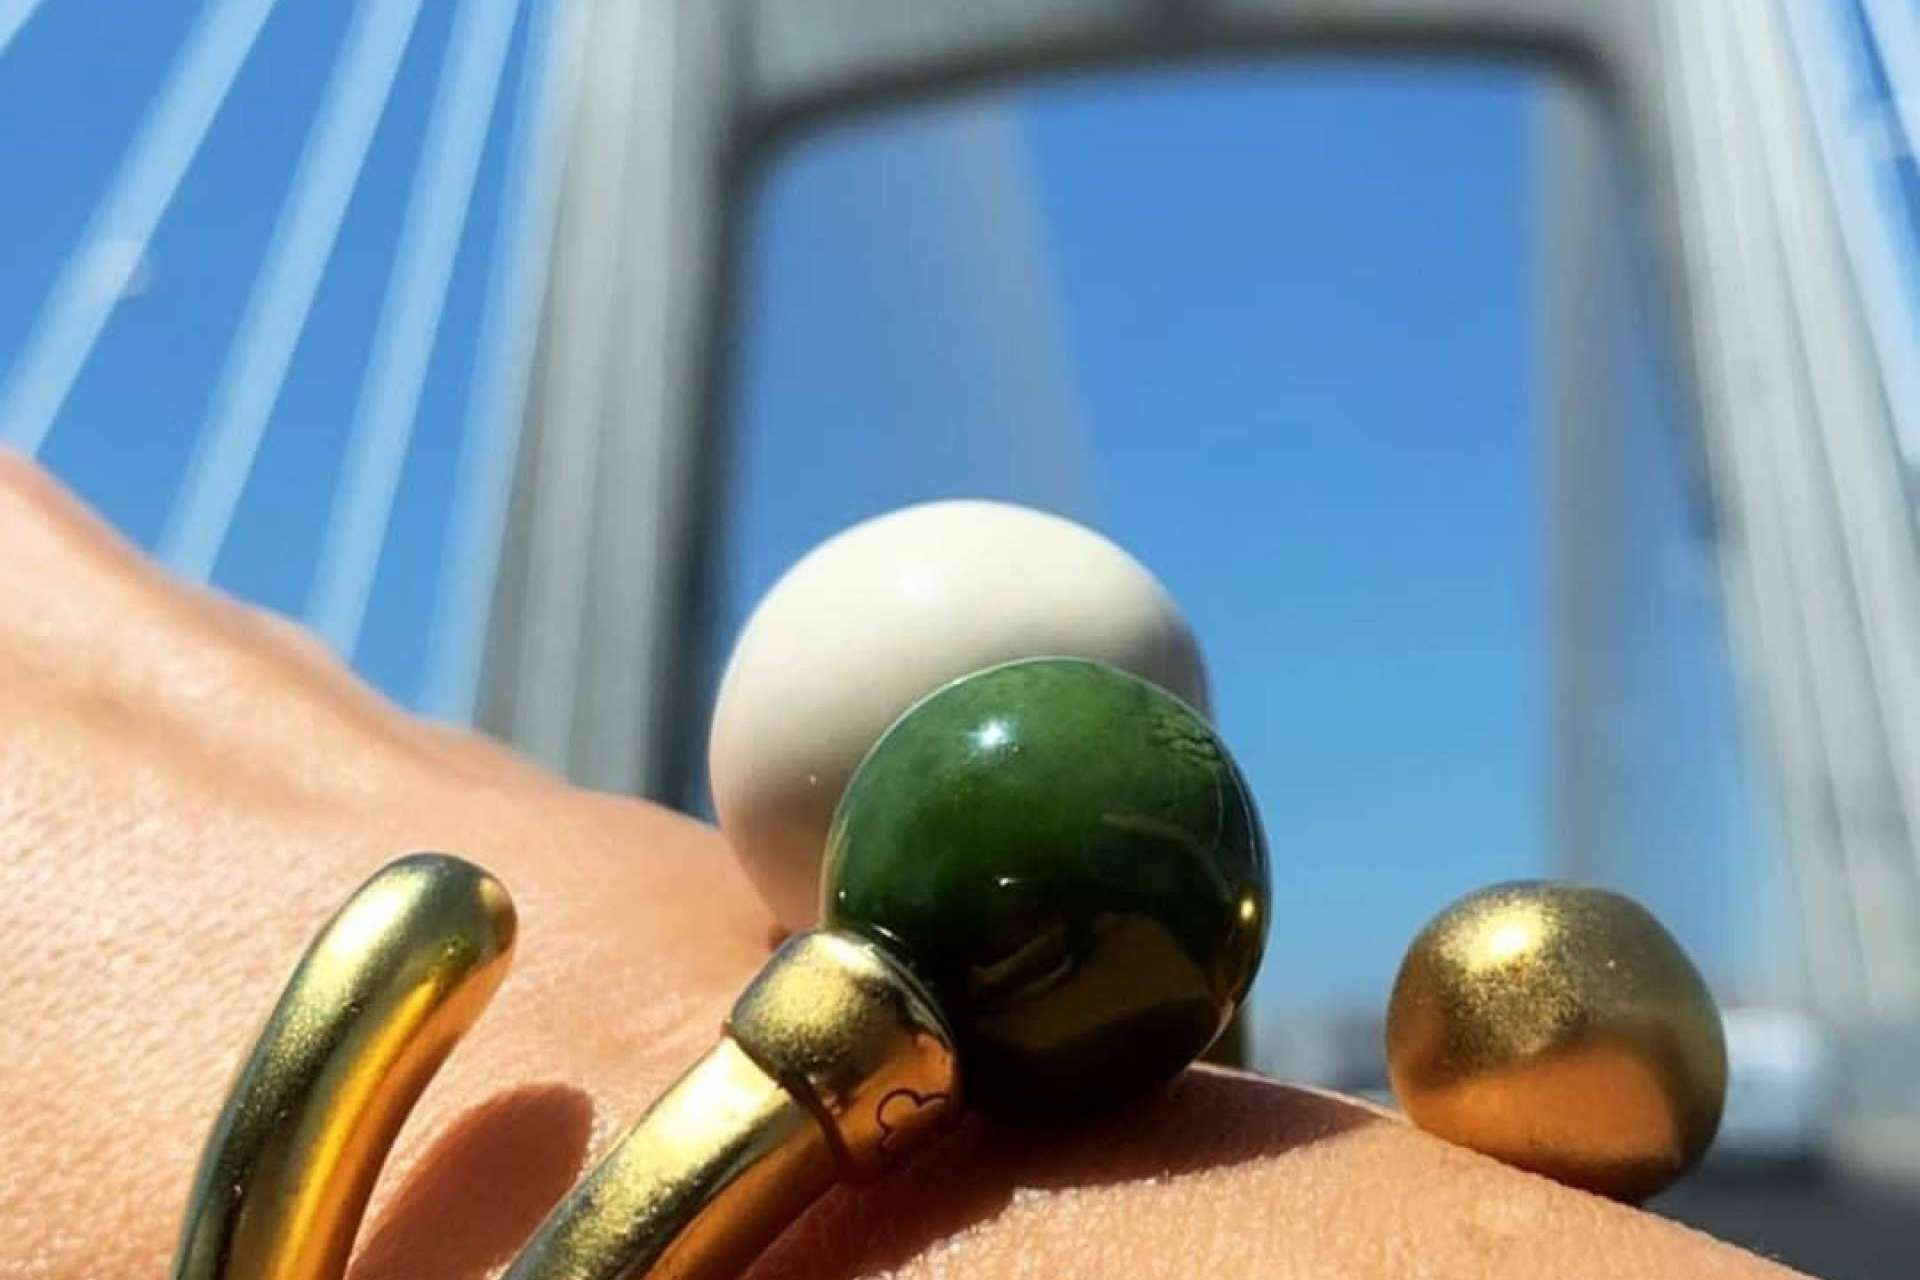  La pulsera Doppi destaca como una de las más lindas joyas con bolas intercambiables de la marca DOPPIACHE 